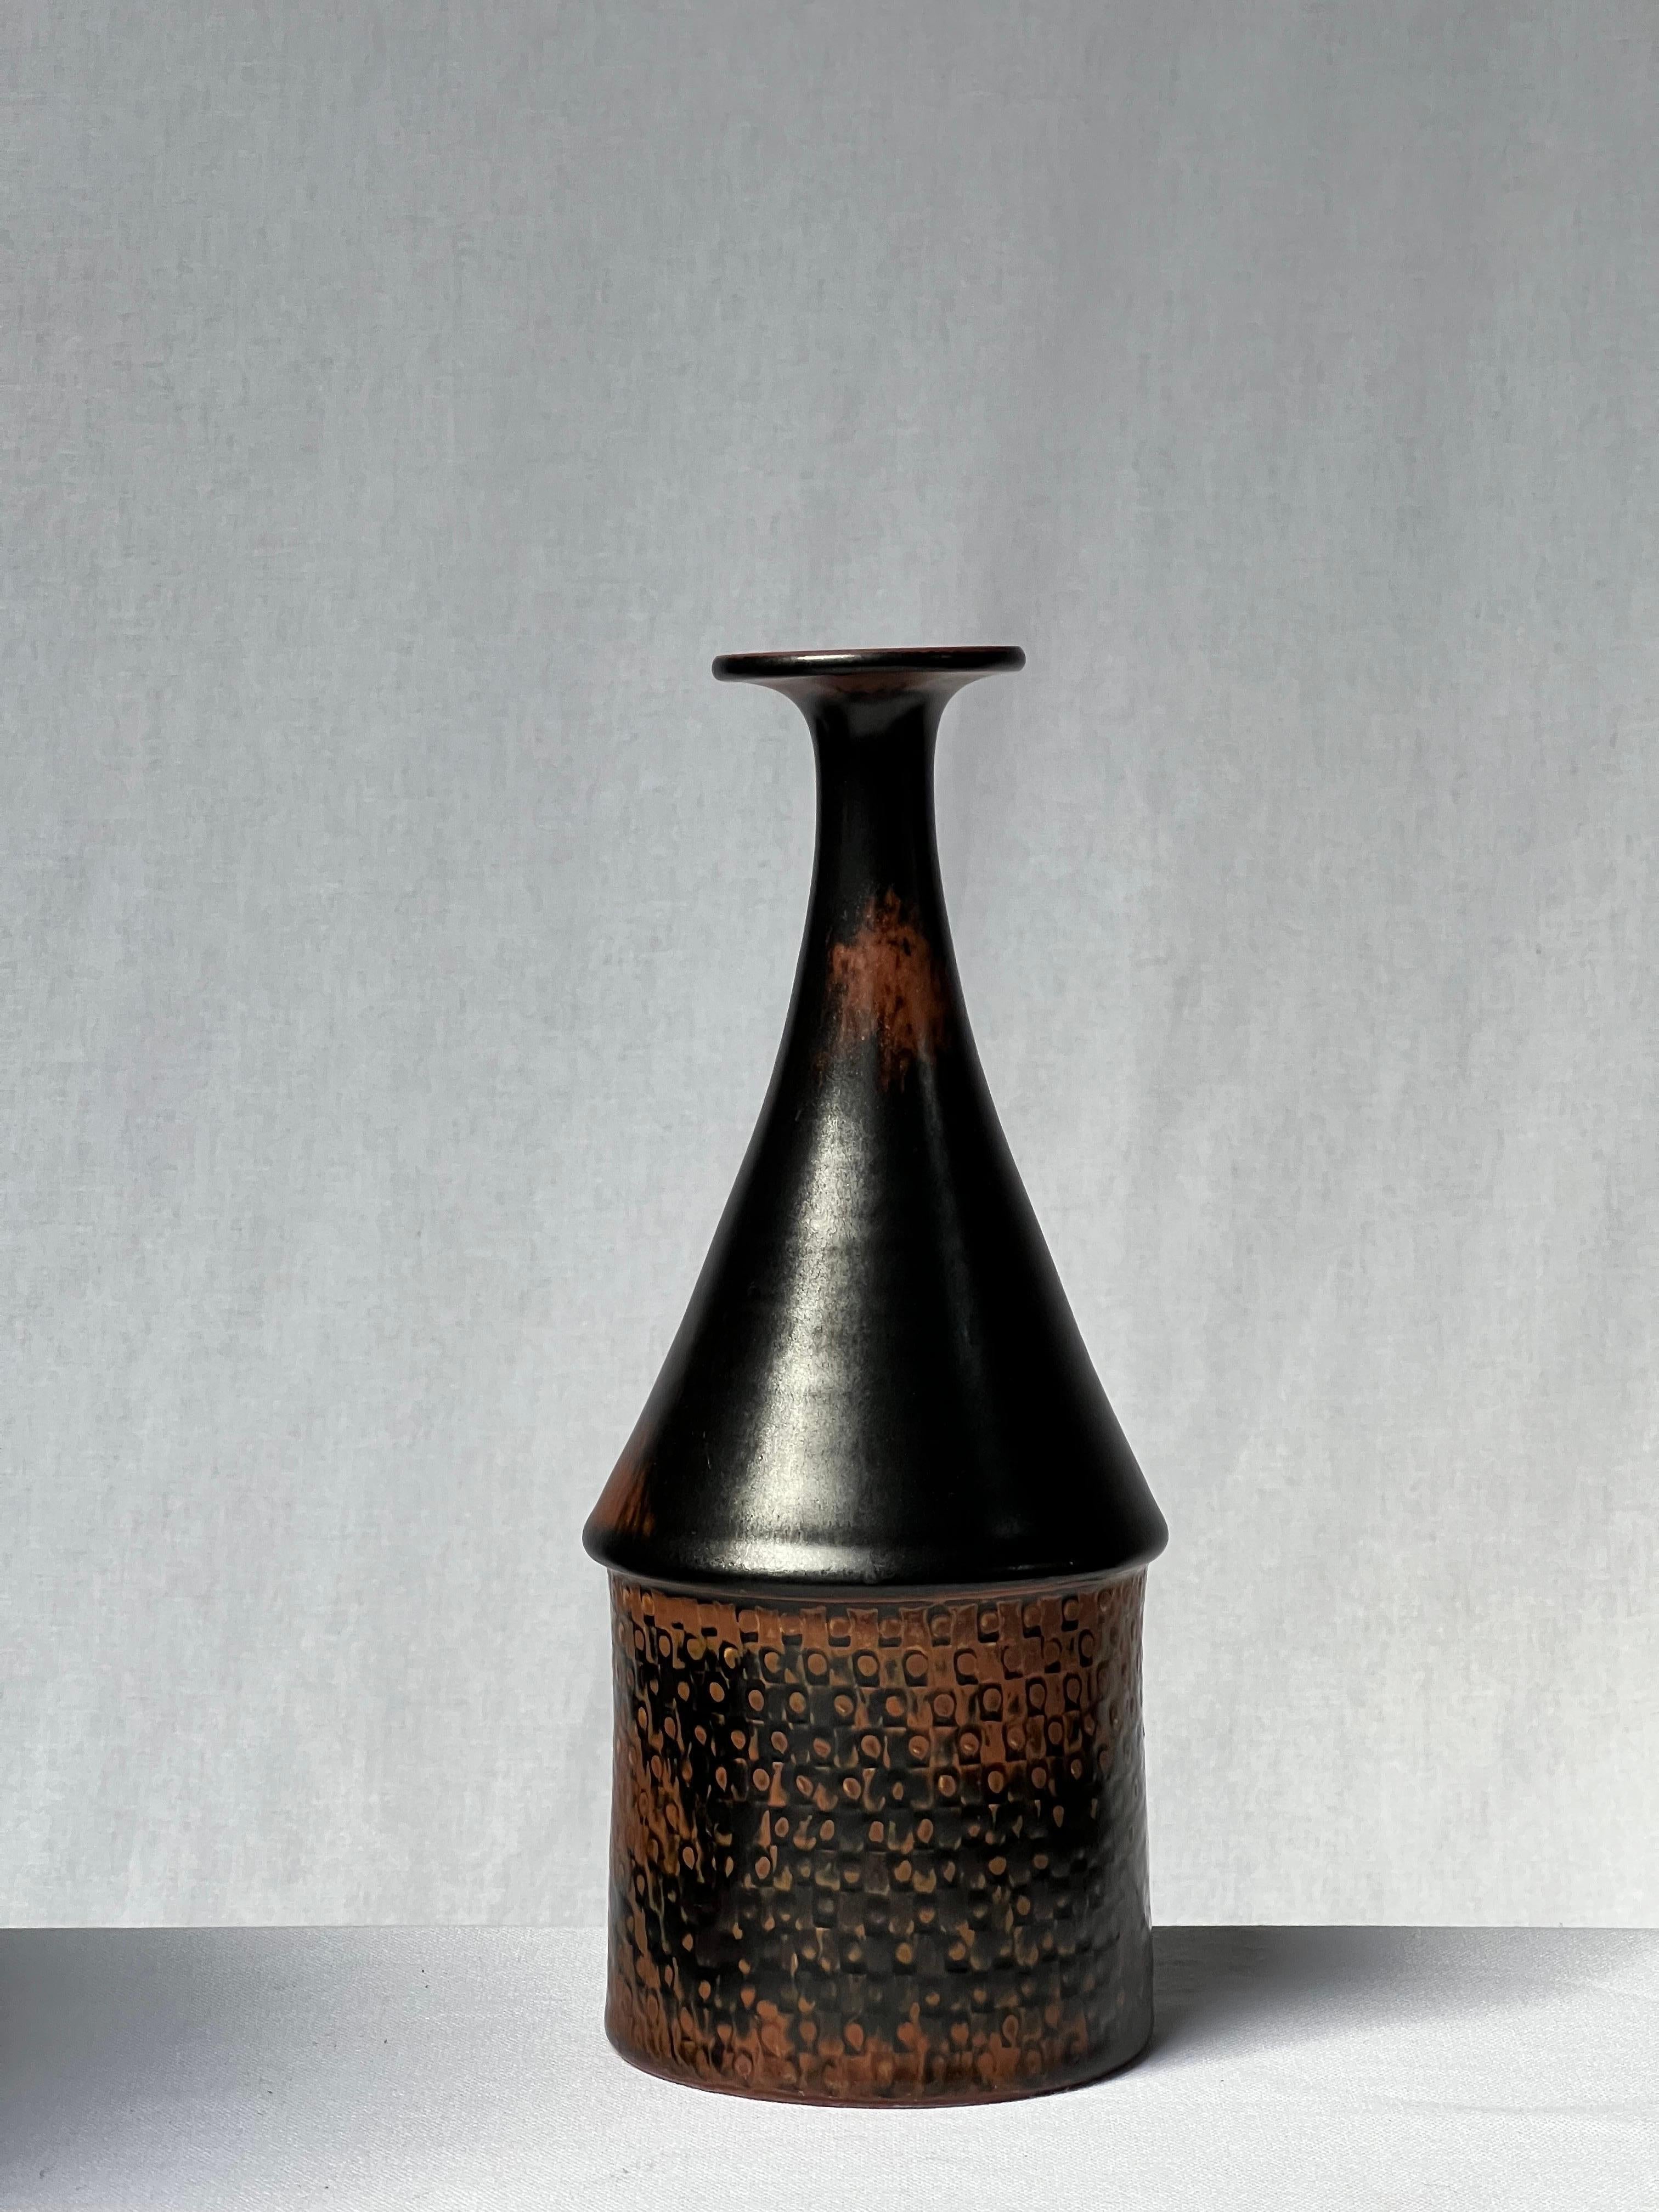 Schwarz glasierte Vase des schwedischen Meisterkeramikers Stig Lindberg. Von hellbraun an den Rändern bis dunkelschwarz. Es handelt sich um die japanische Tenmoku-Glasur, die auch von den alten Chinesen verwendet wurde. Elegante Details und schönes